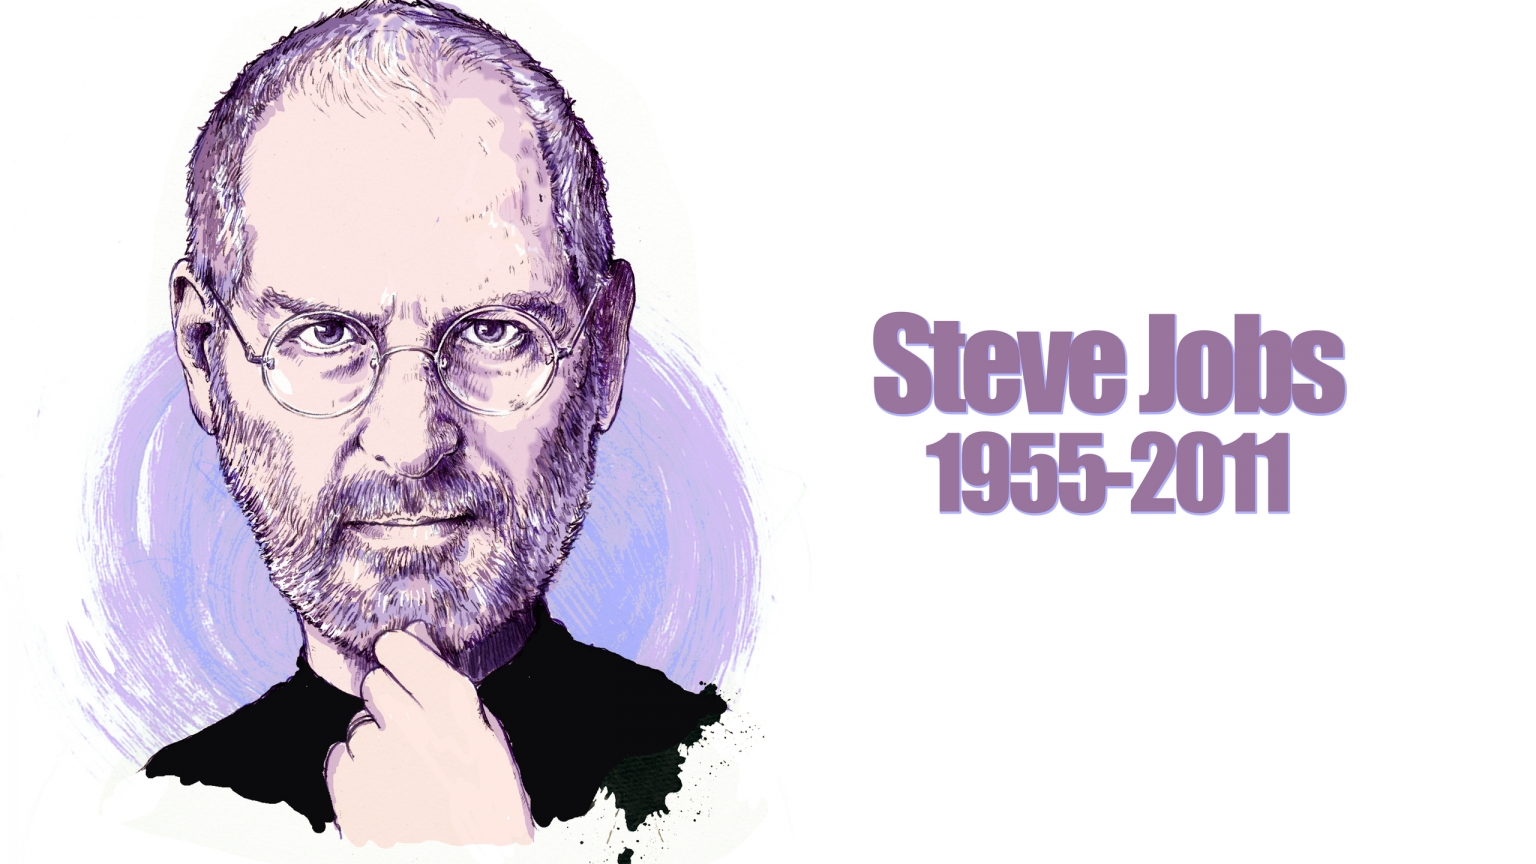 Steve Jobs Portrait for 1536 x 864 HDTV resolution